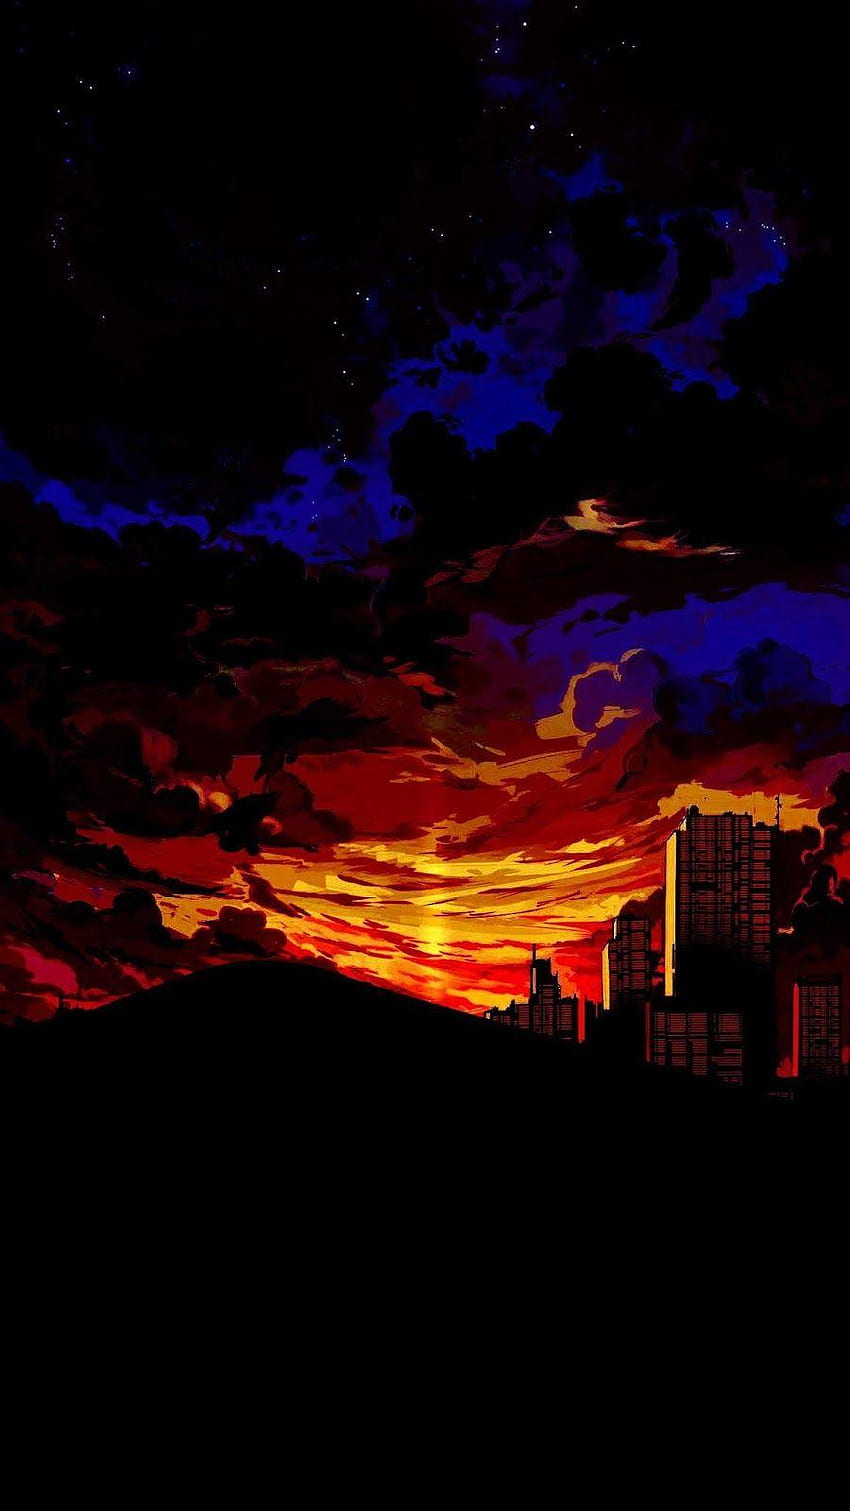 Cảm giác trầm mặc, nghệ thuật và đầy cảm xúc được tái hiện trong Aesthetic Anime Sunset. Bạn sẽ tìm thấy những bức tranh nghệ thuật sinh động, những màn hoàng hôn thiên nhiên đẹp đến nao lòng.